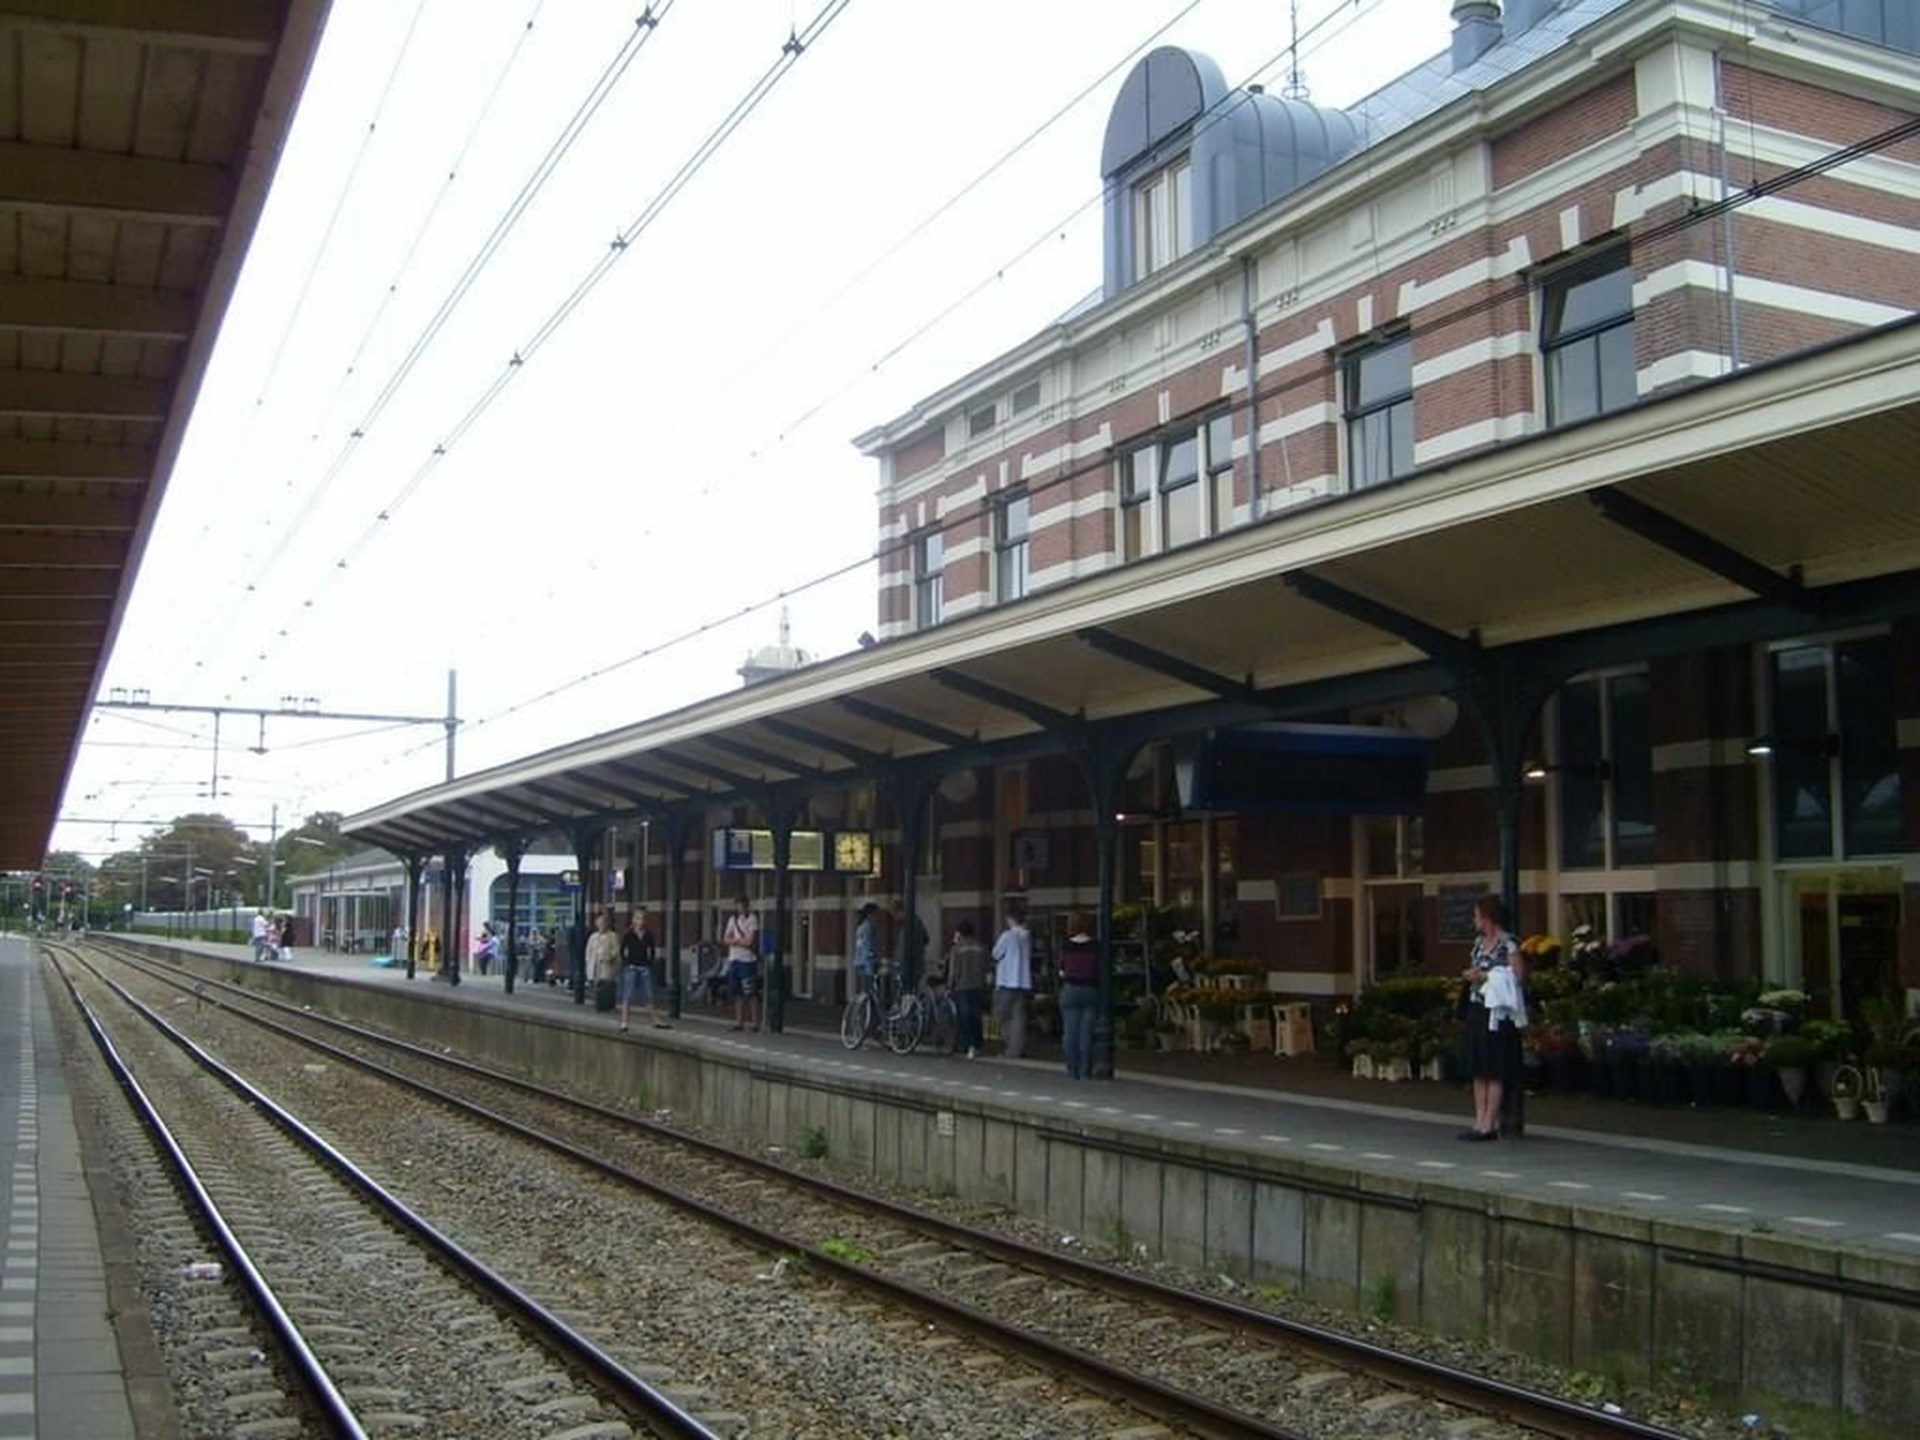 Horeca-Exploitatie het Station Hoorn/Kiosk banner